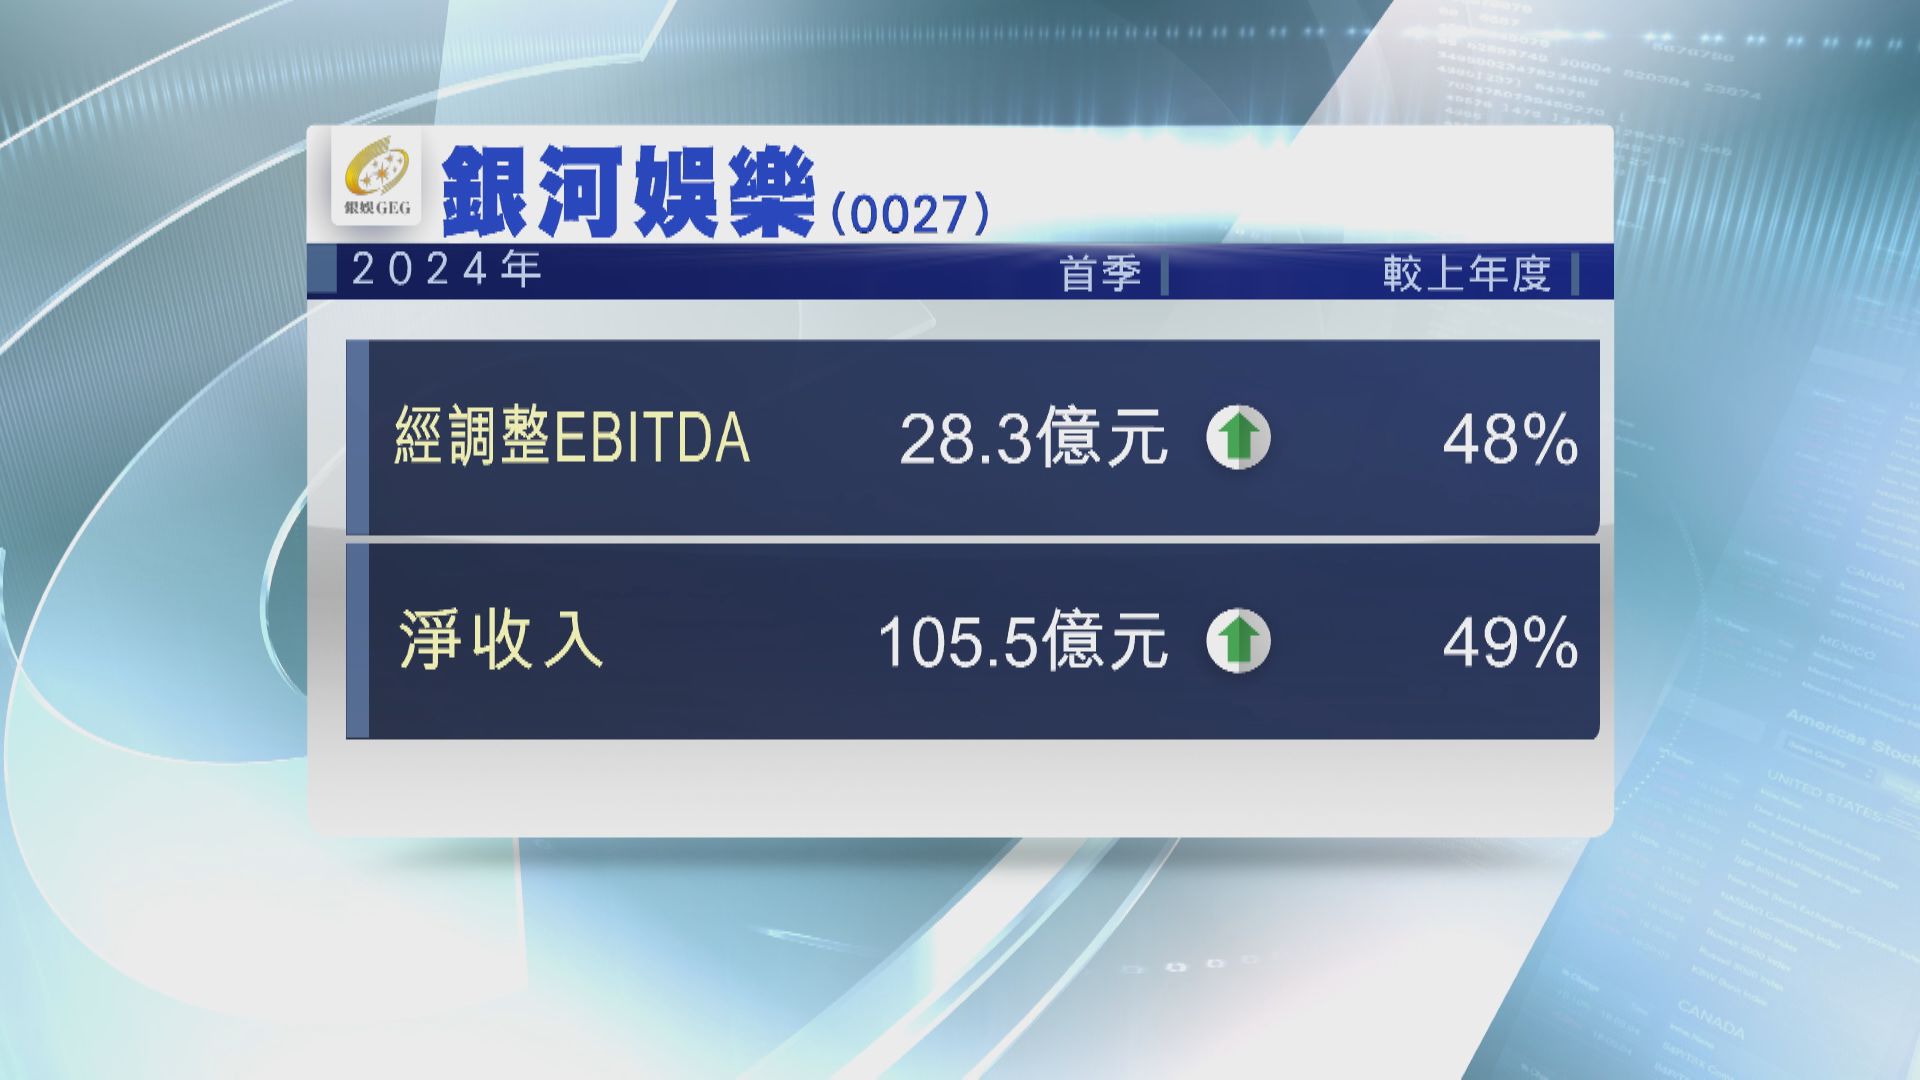 【藍籌業績】銀娛首季經調整EBITDA升48% 遜預期